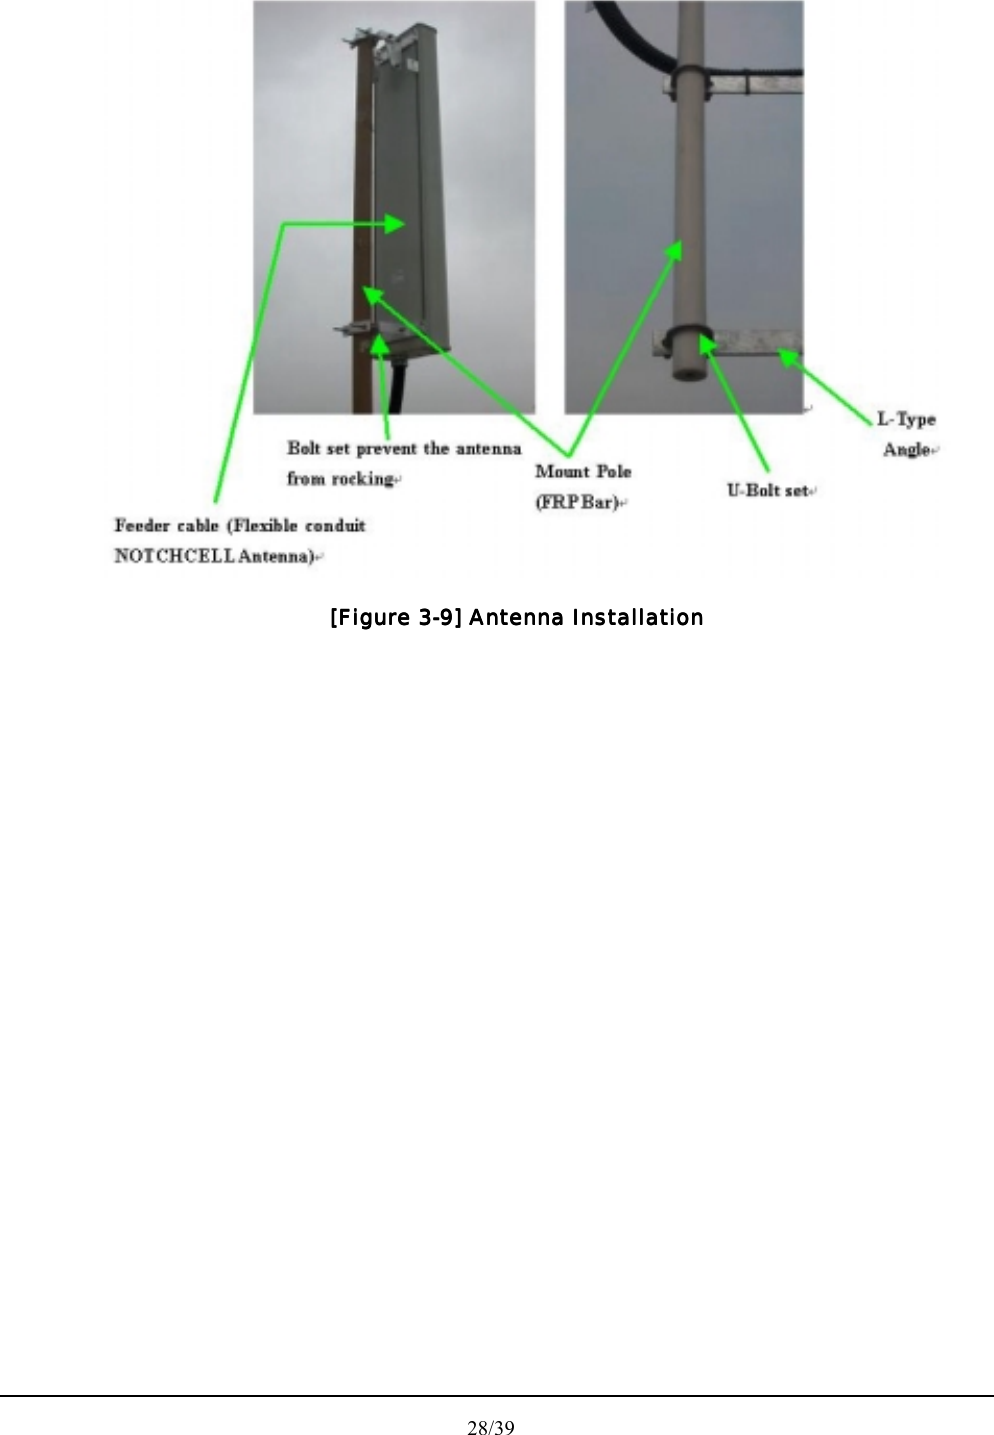  28/39   [Figure 3[Figure 3[Figure 3[Figure 3----9] Antenna Installation9] Antenna Installation9] Antenna Installation9] Antenna Installation         